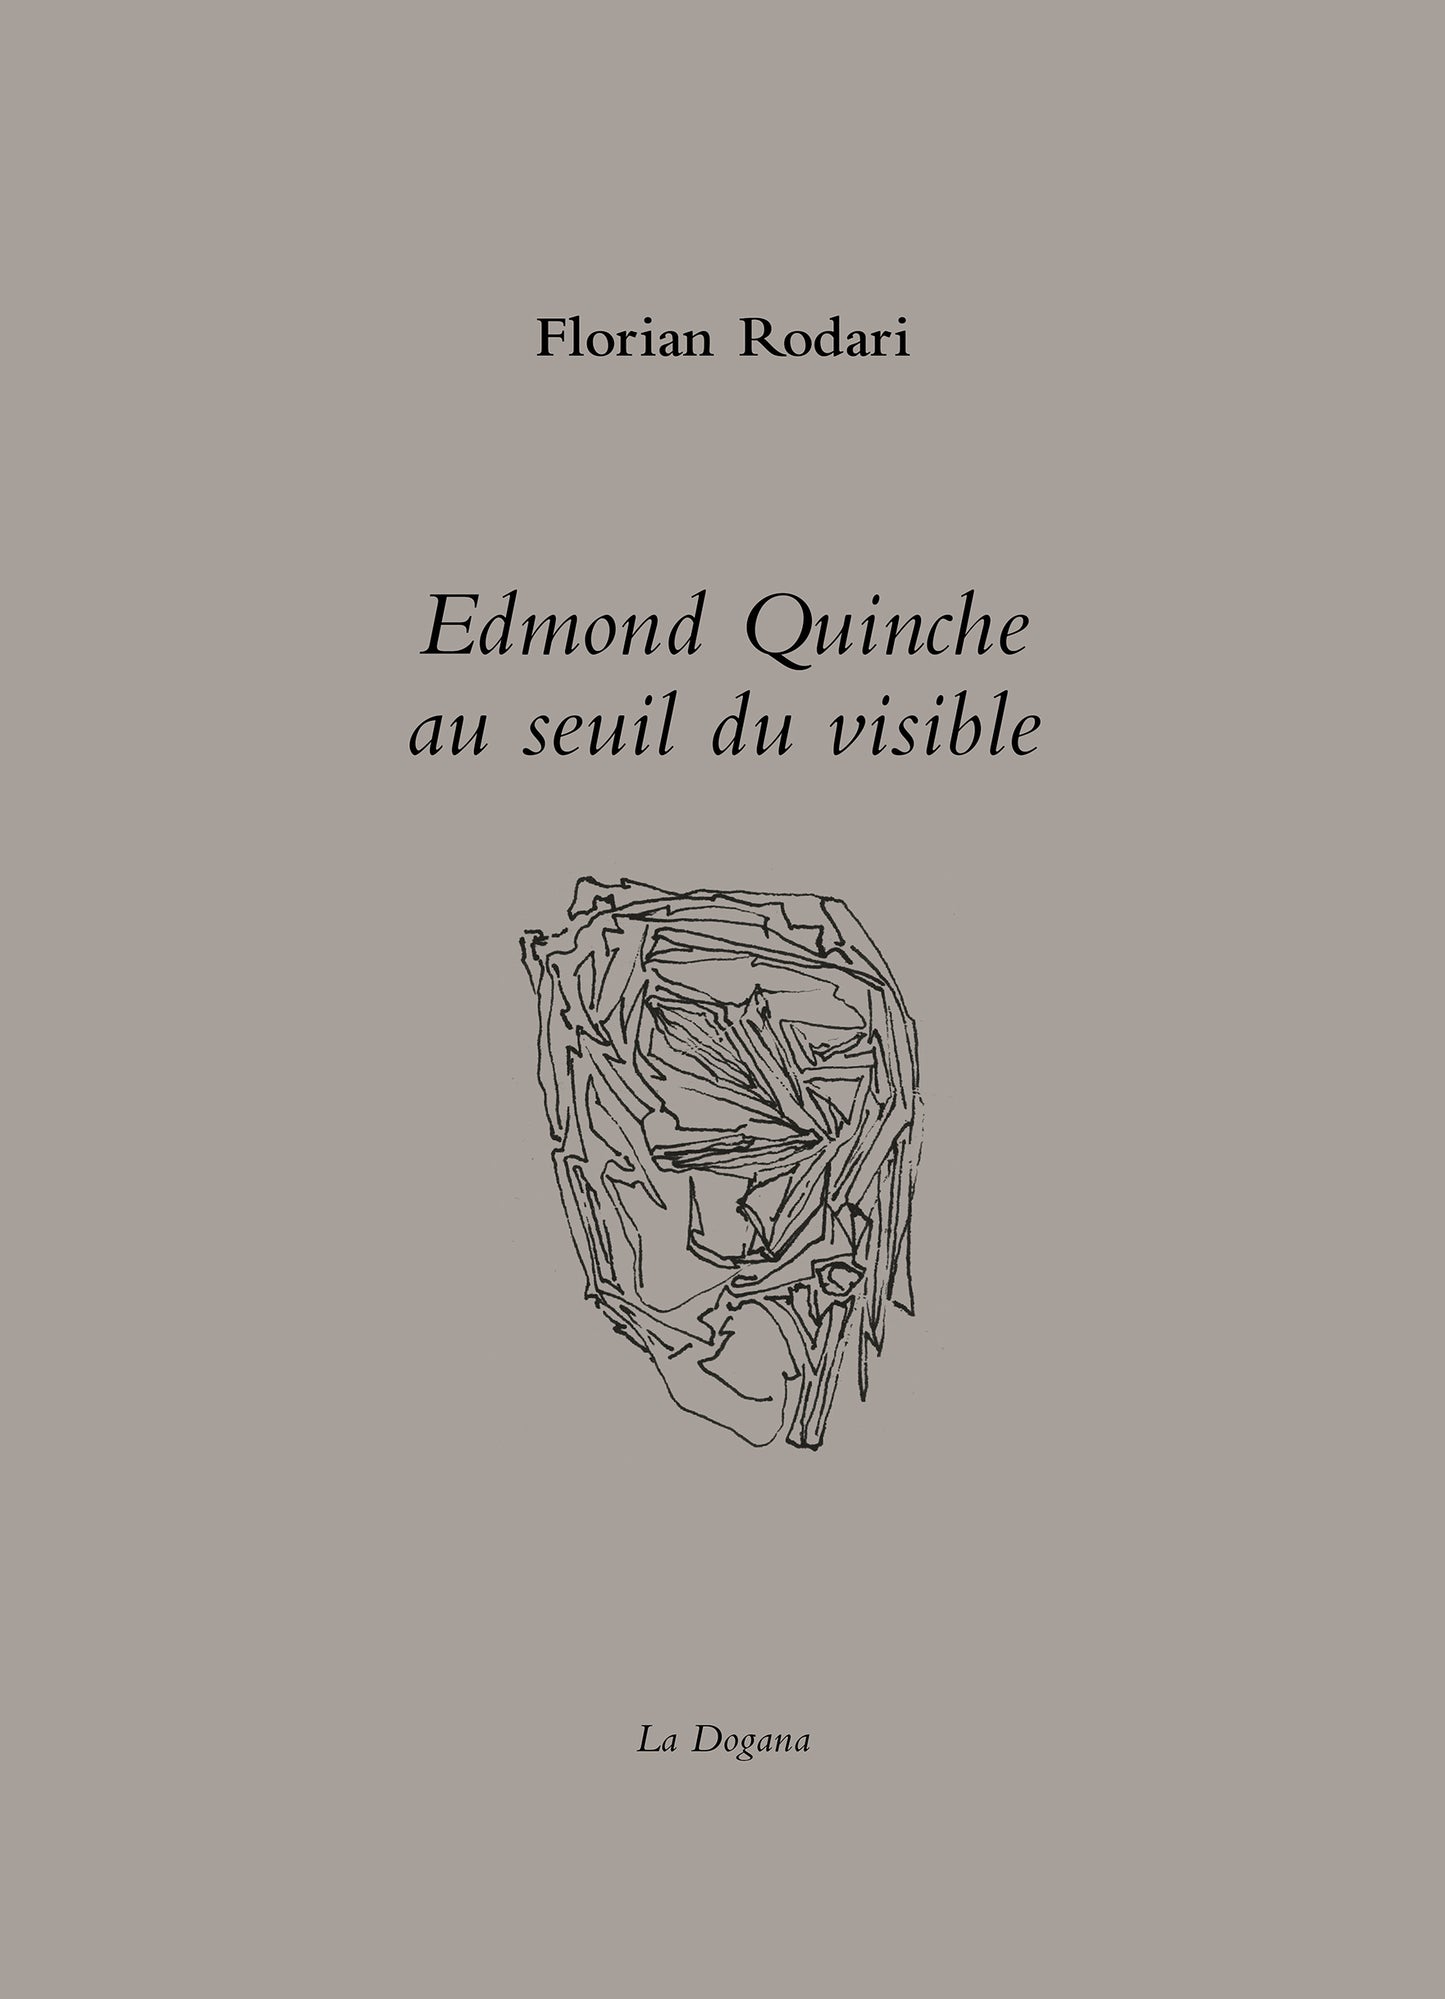 Edmond Quinche